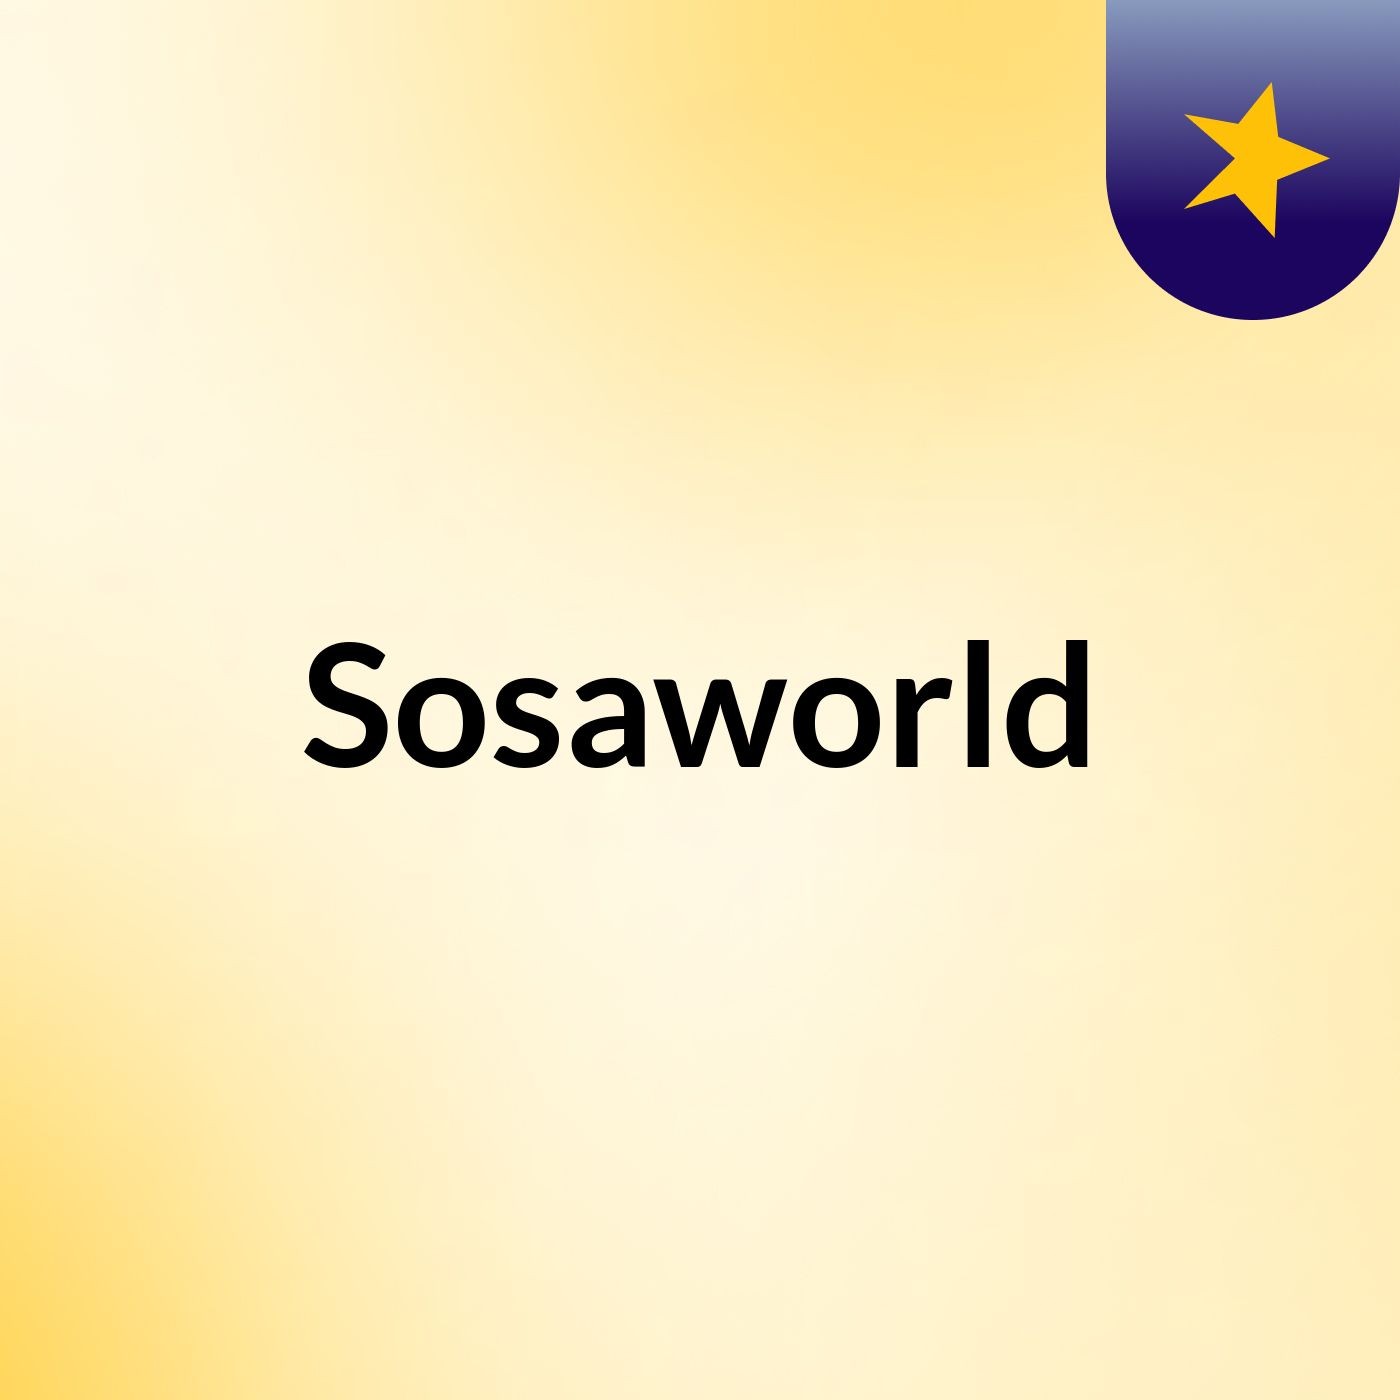 Sosaworld